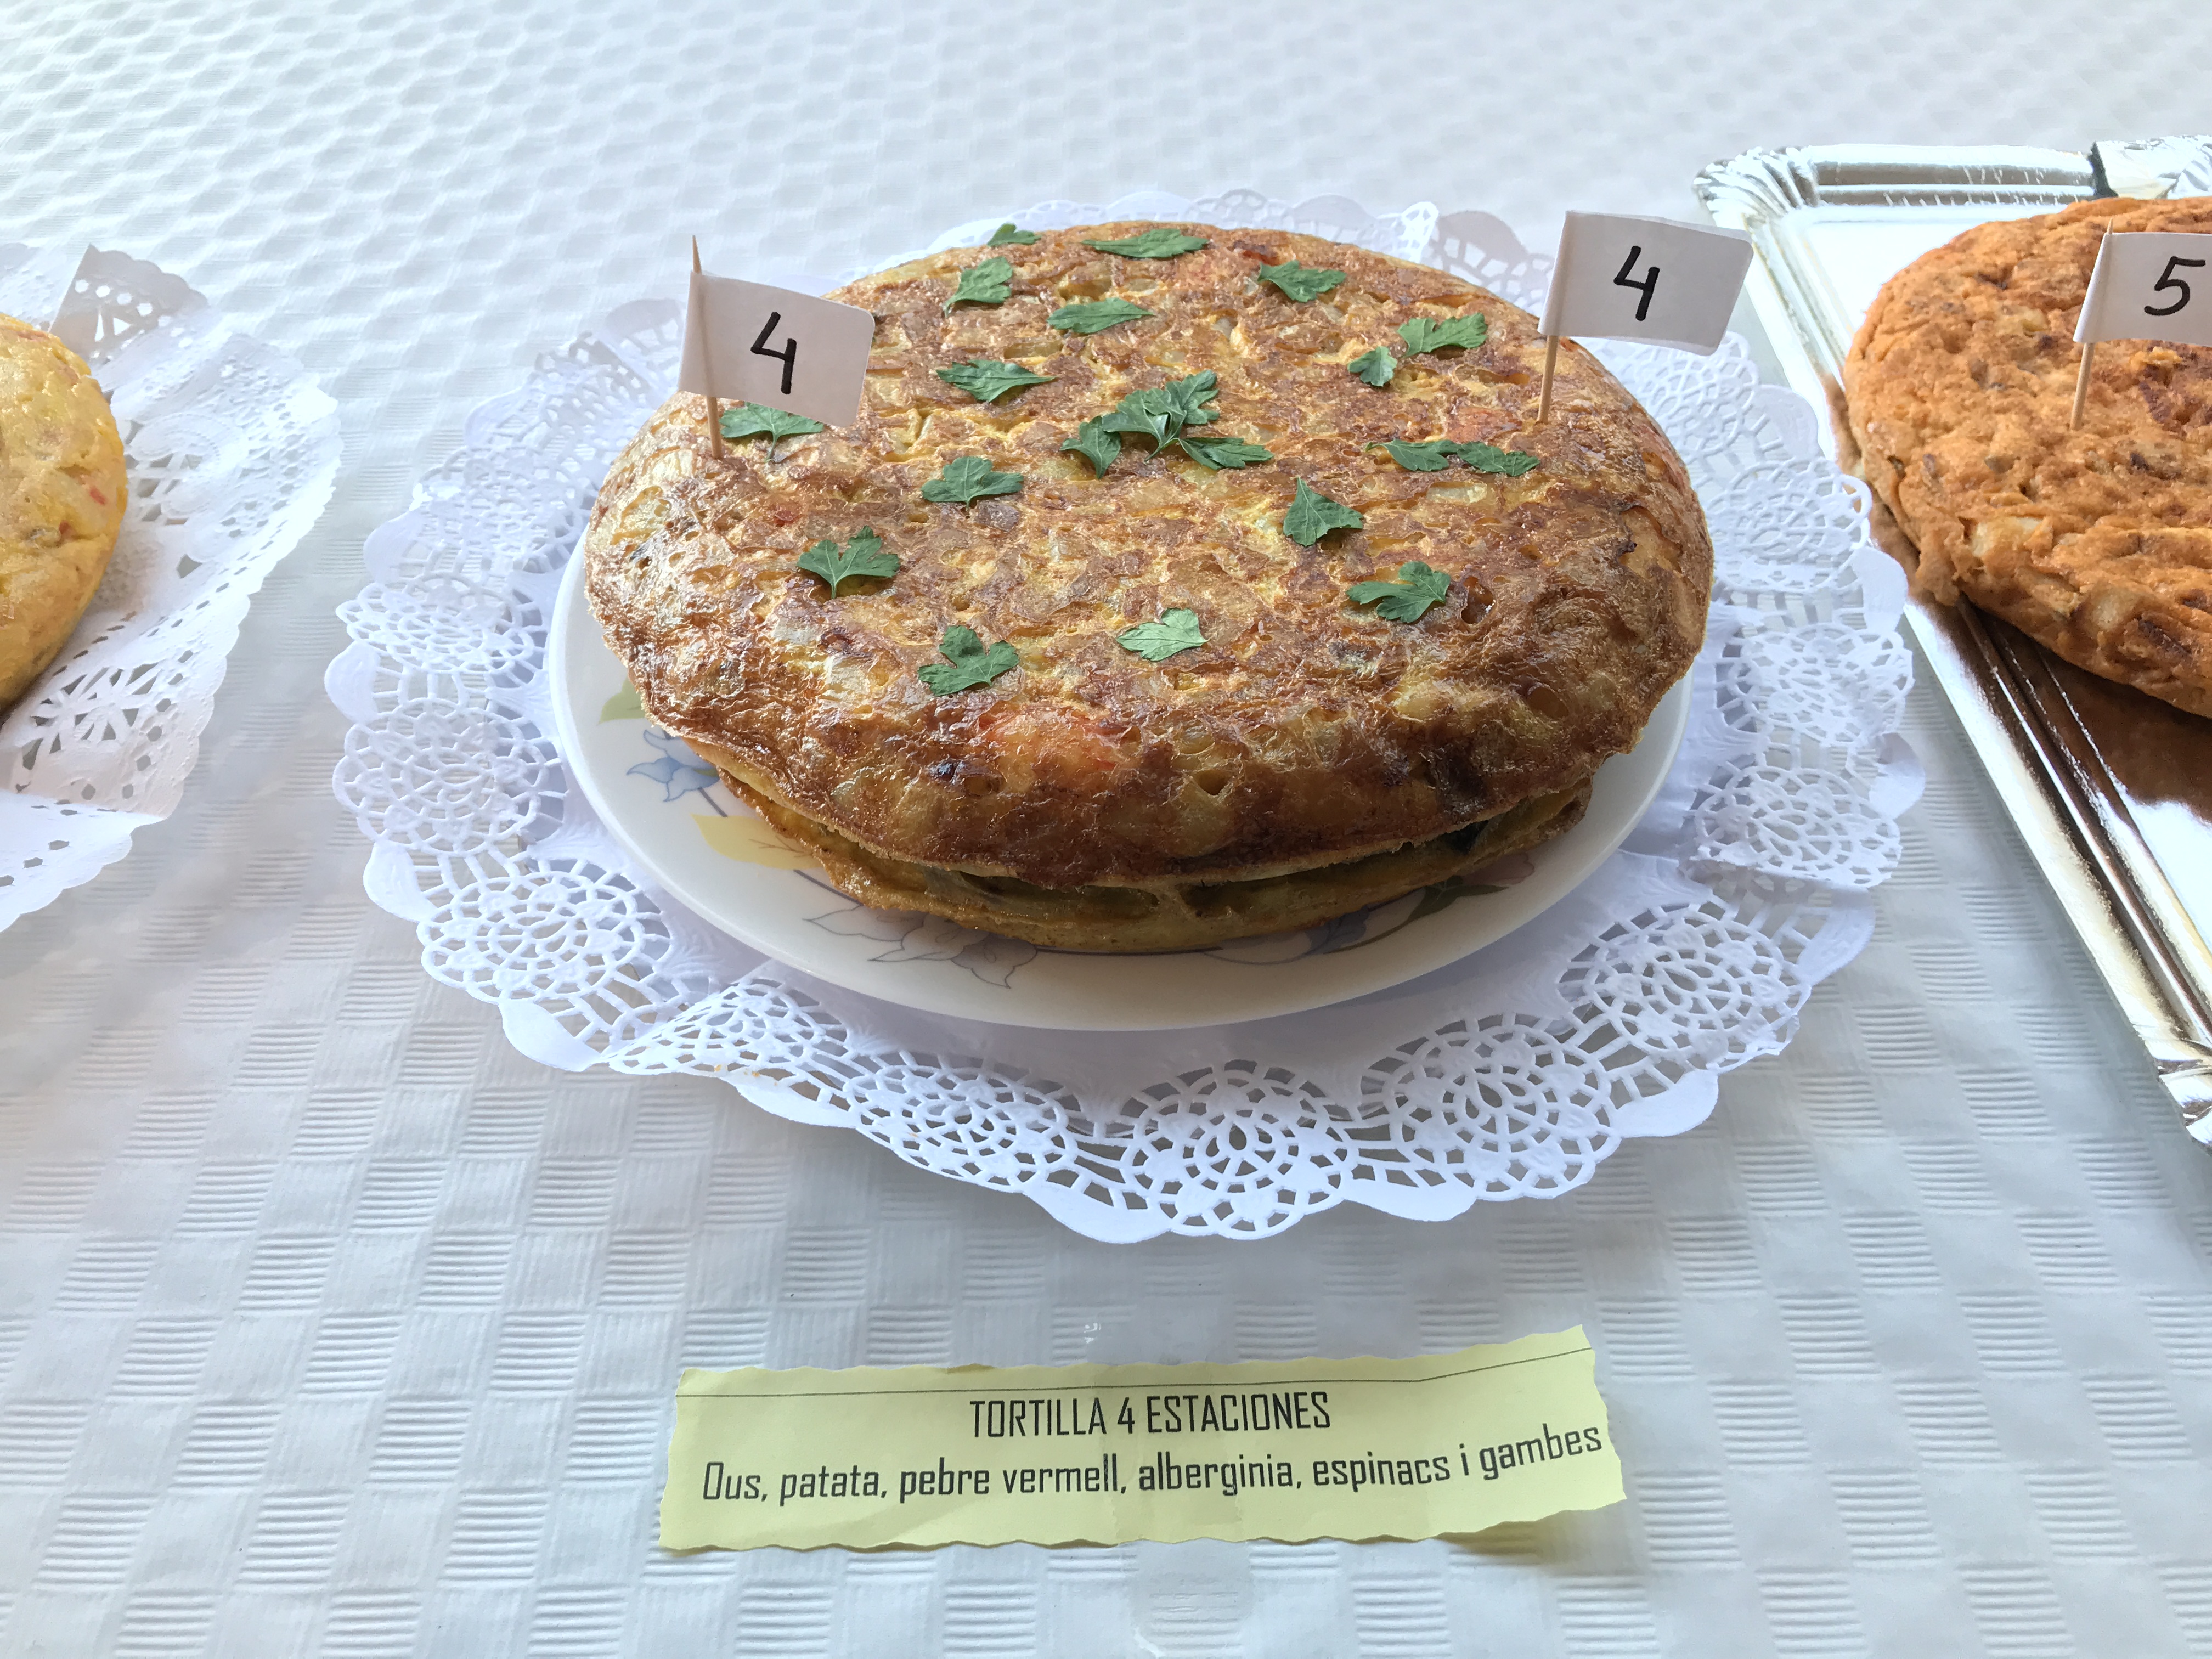 Concurso de tortillas de patatas Menorca